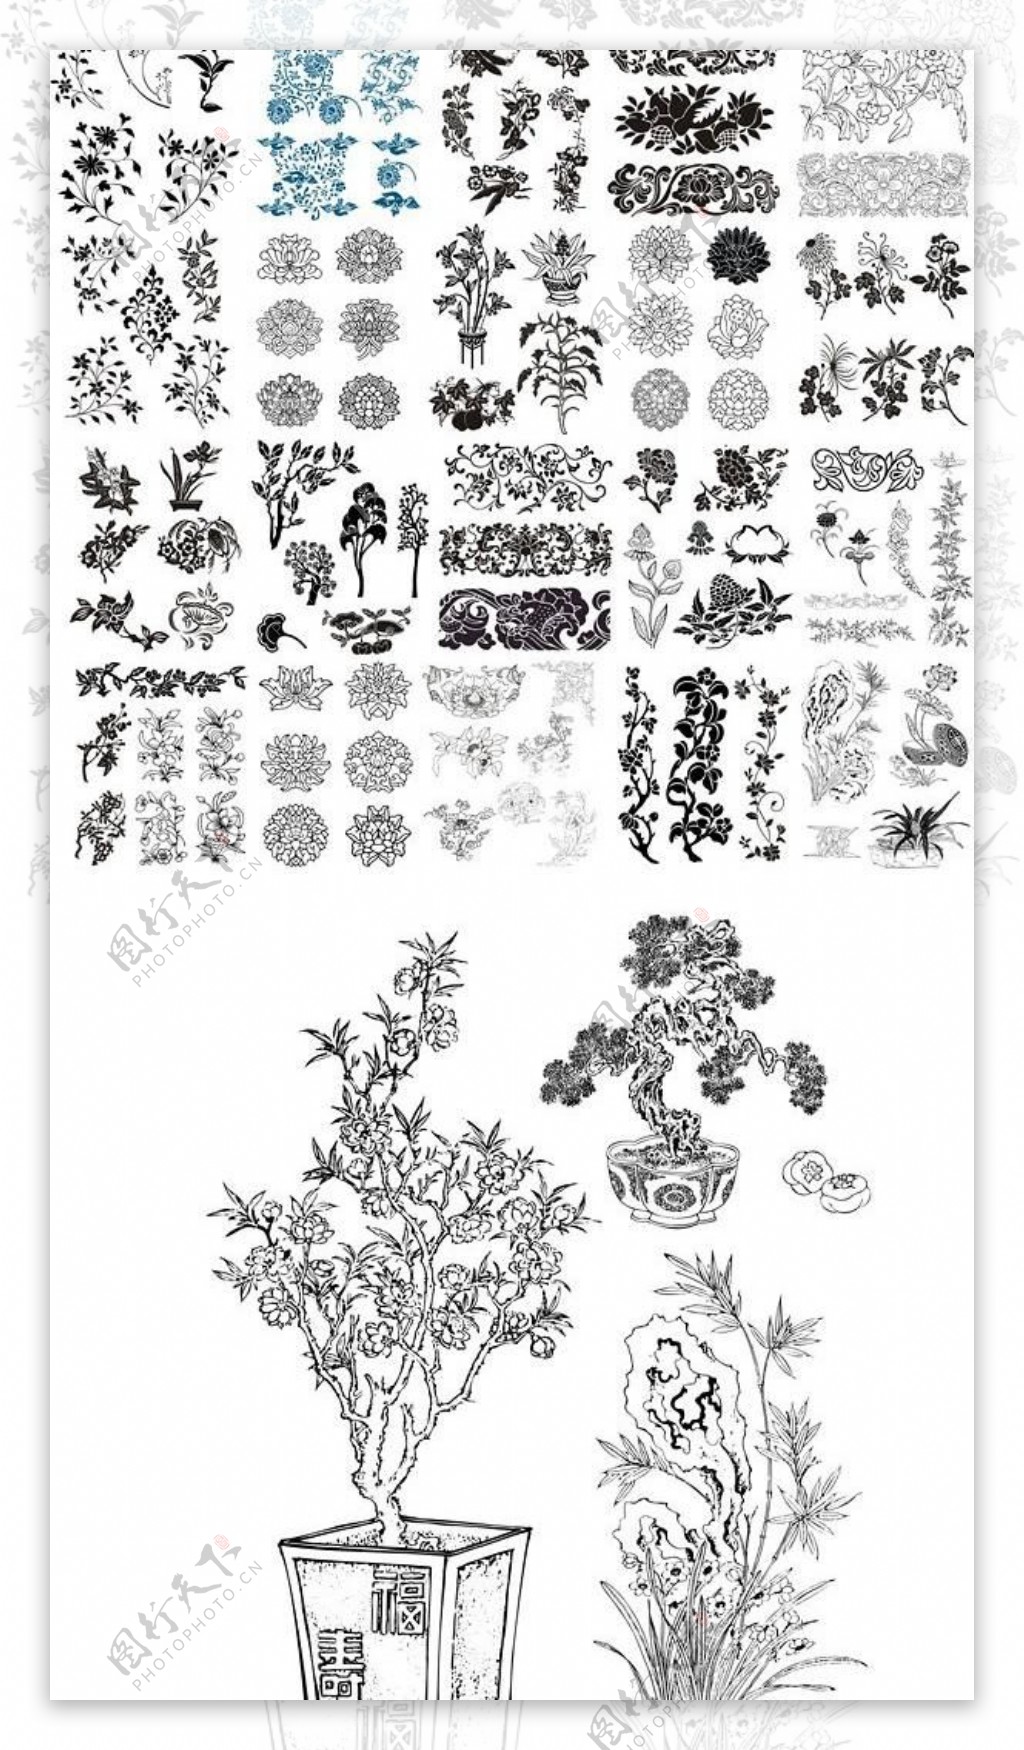 49种不同的CDR矢量模式吉祥图案传统模式传统的纹理中国风载体守道盆景经典莲花松